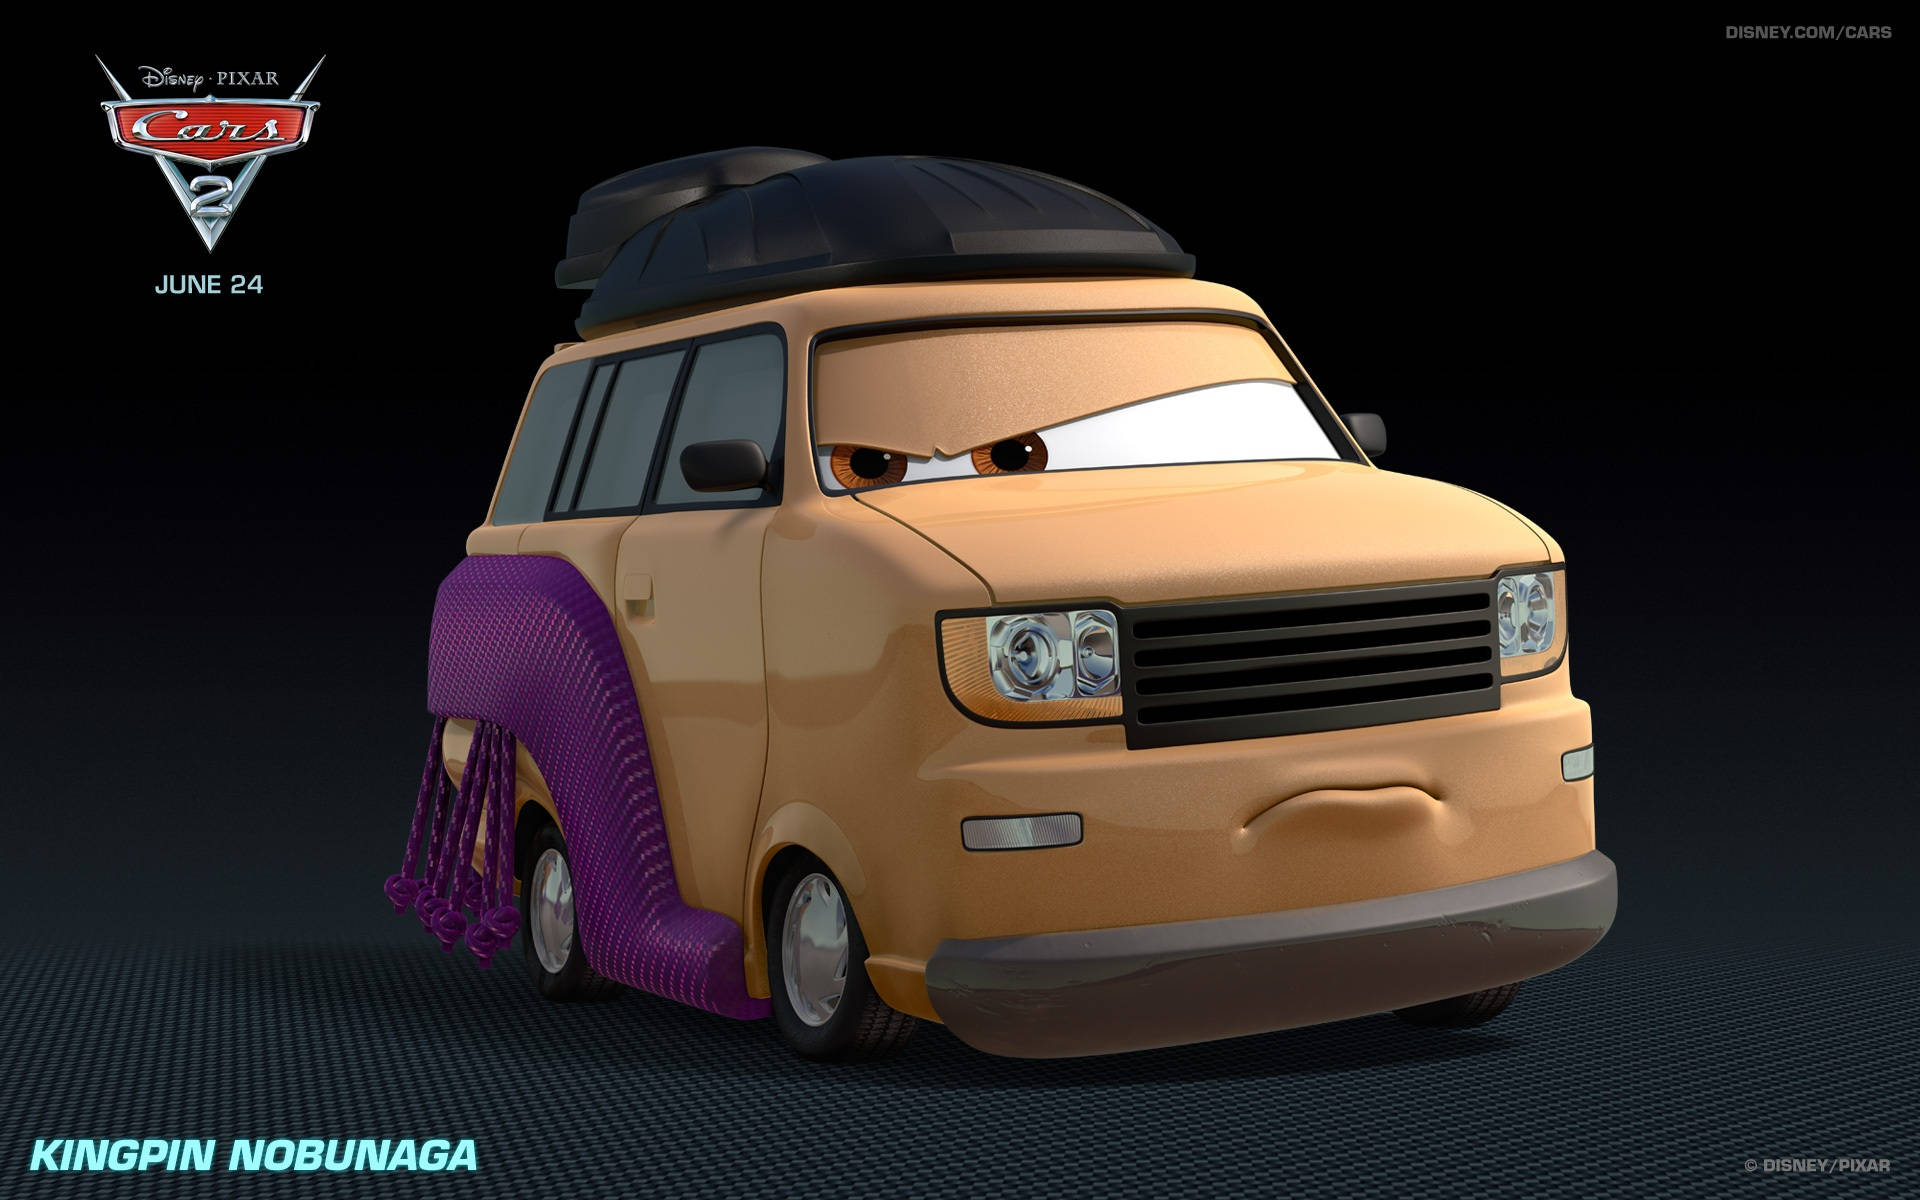 Disney Pixar Kingpin Nobunaga Cars 2 Background